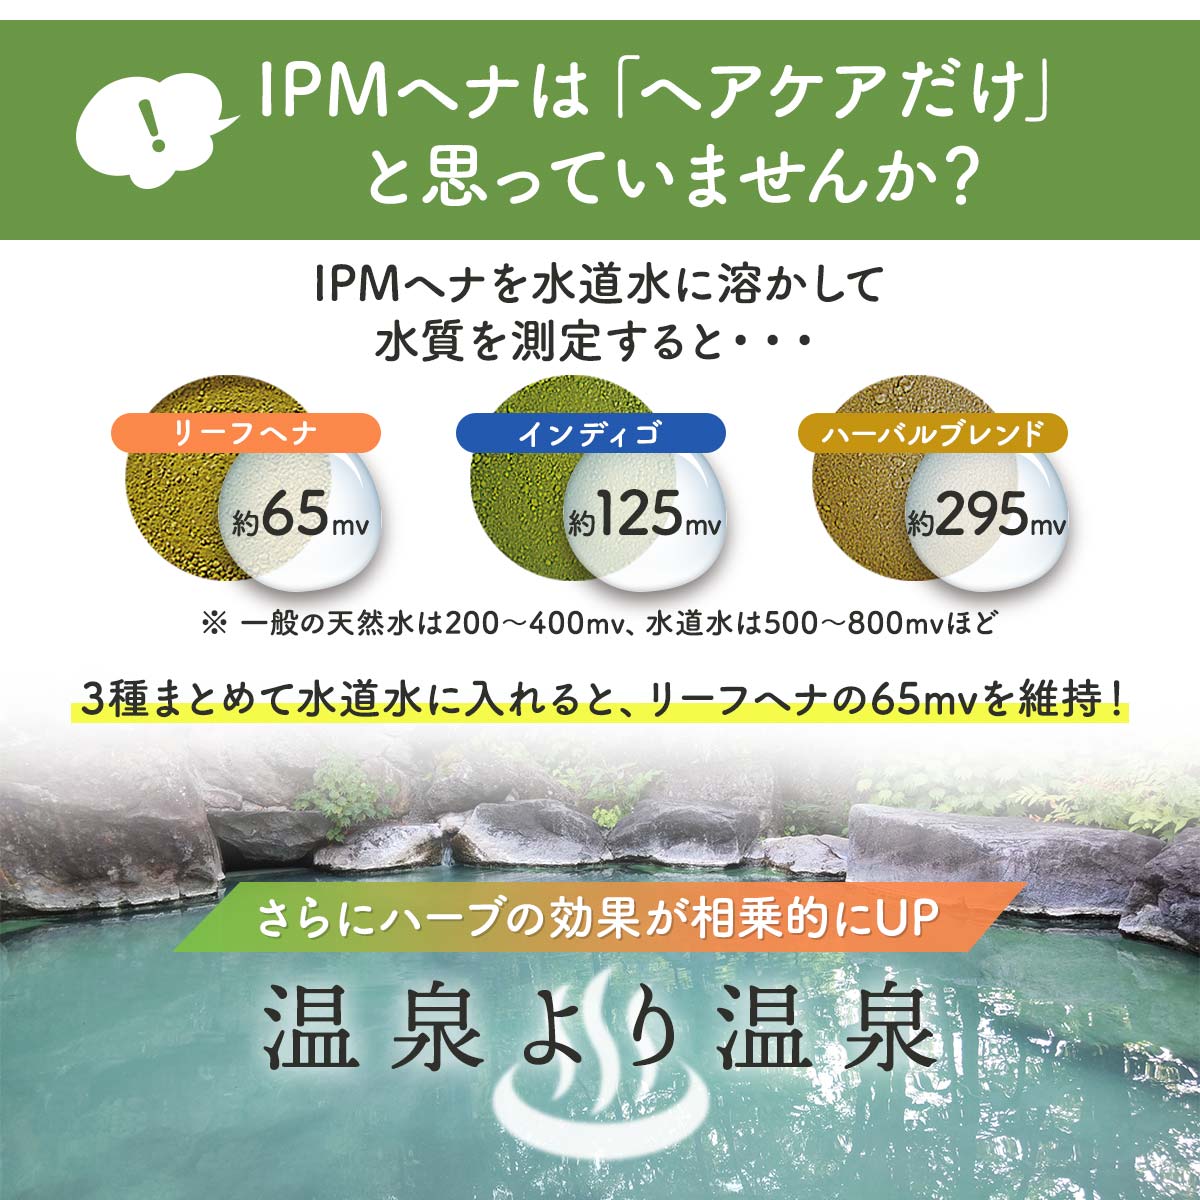 【選べるプレゼント付き】IPM ヘナ リーフヘナ 100g 5袋セット | JUN WORLD 楽天市場店